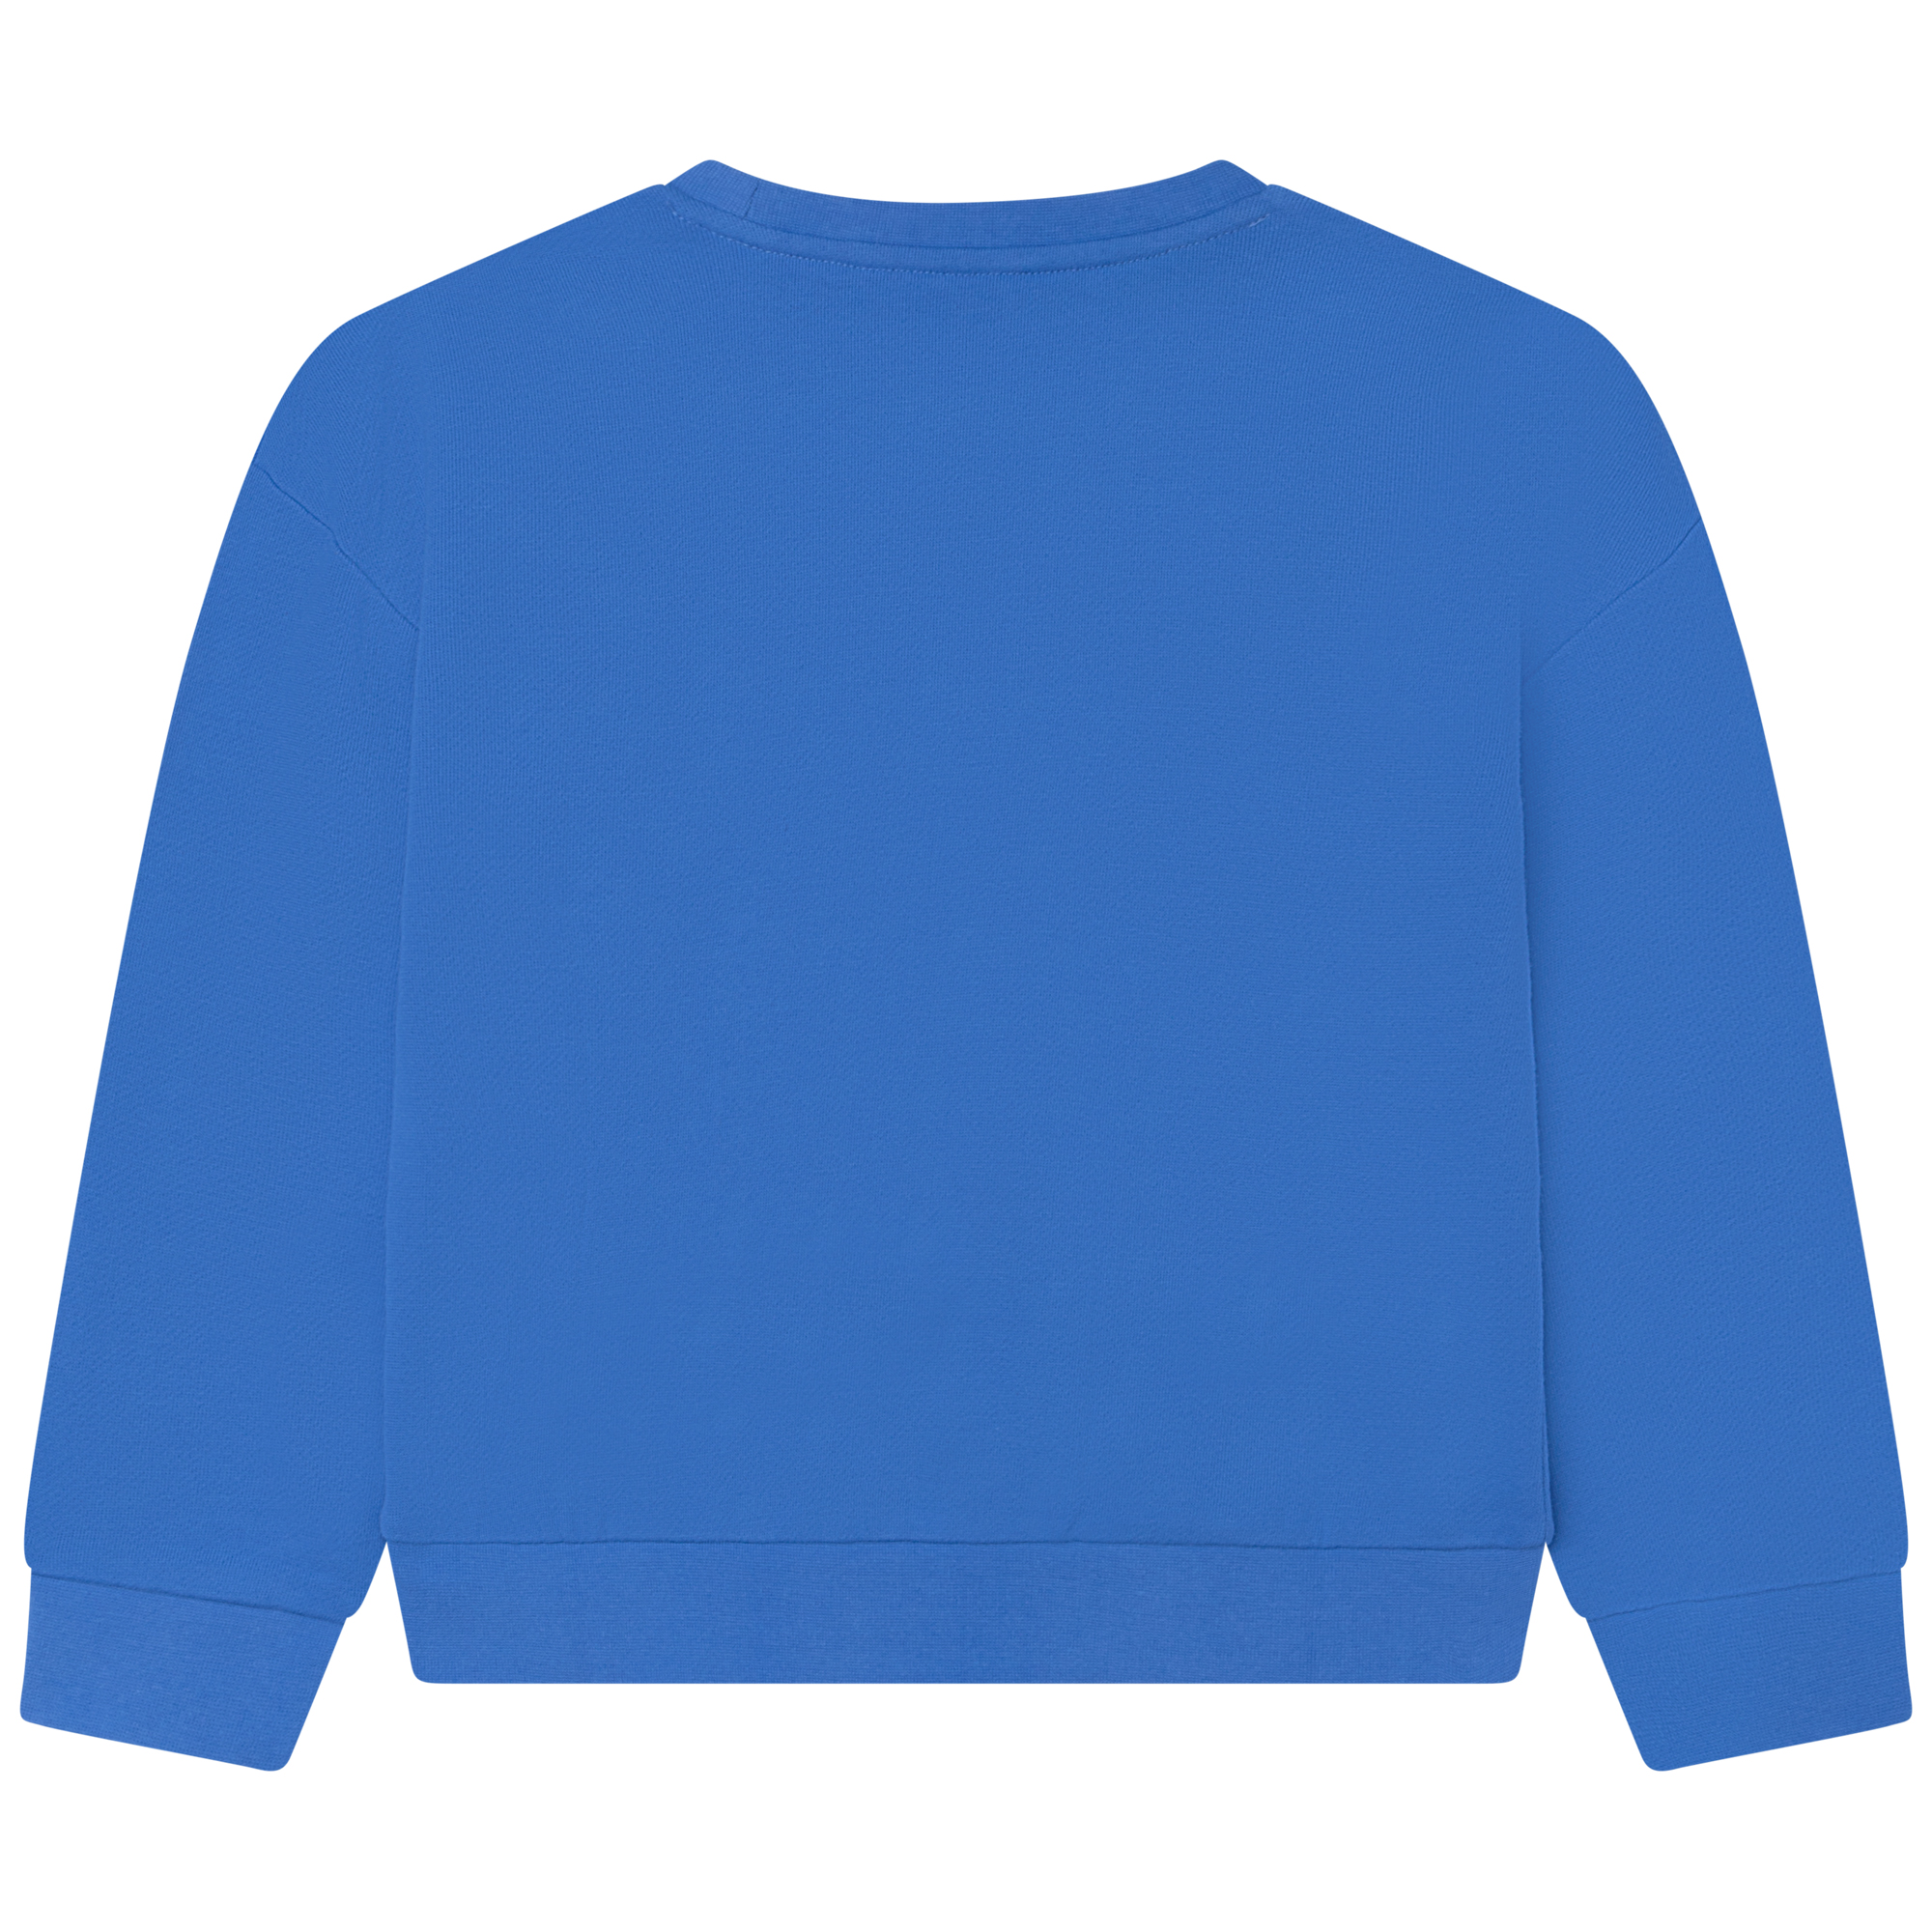 Fleece sweatshirt MICHAEL KORS for GIRL